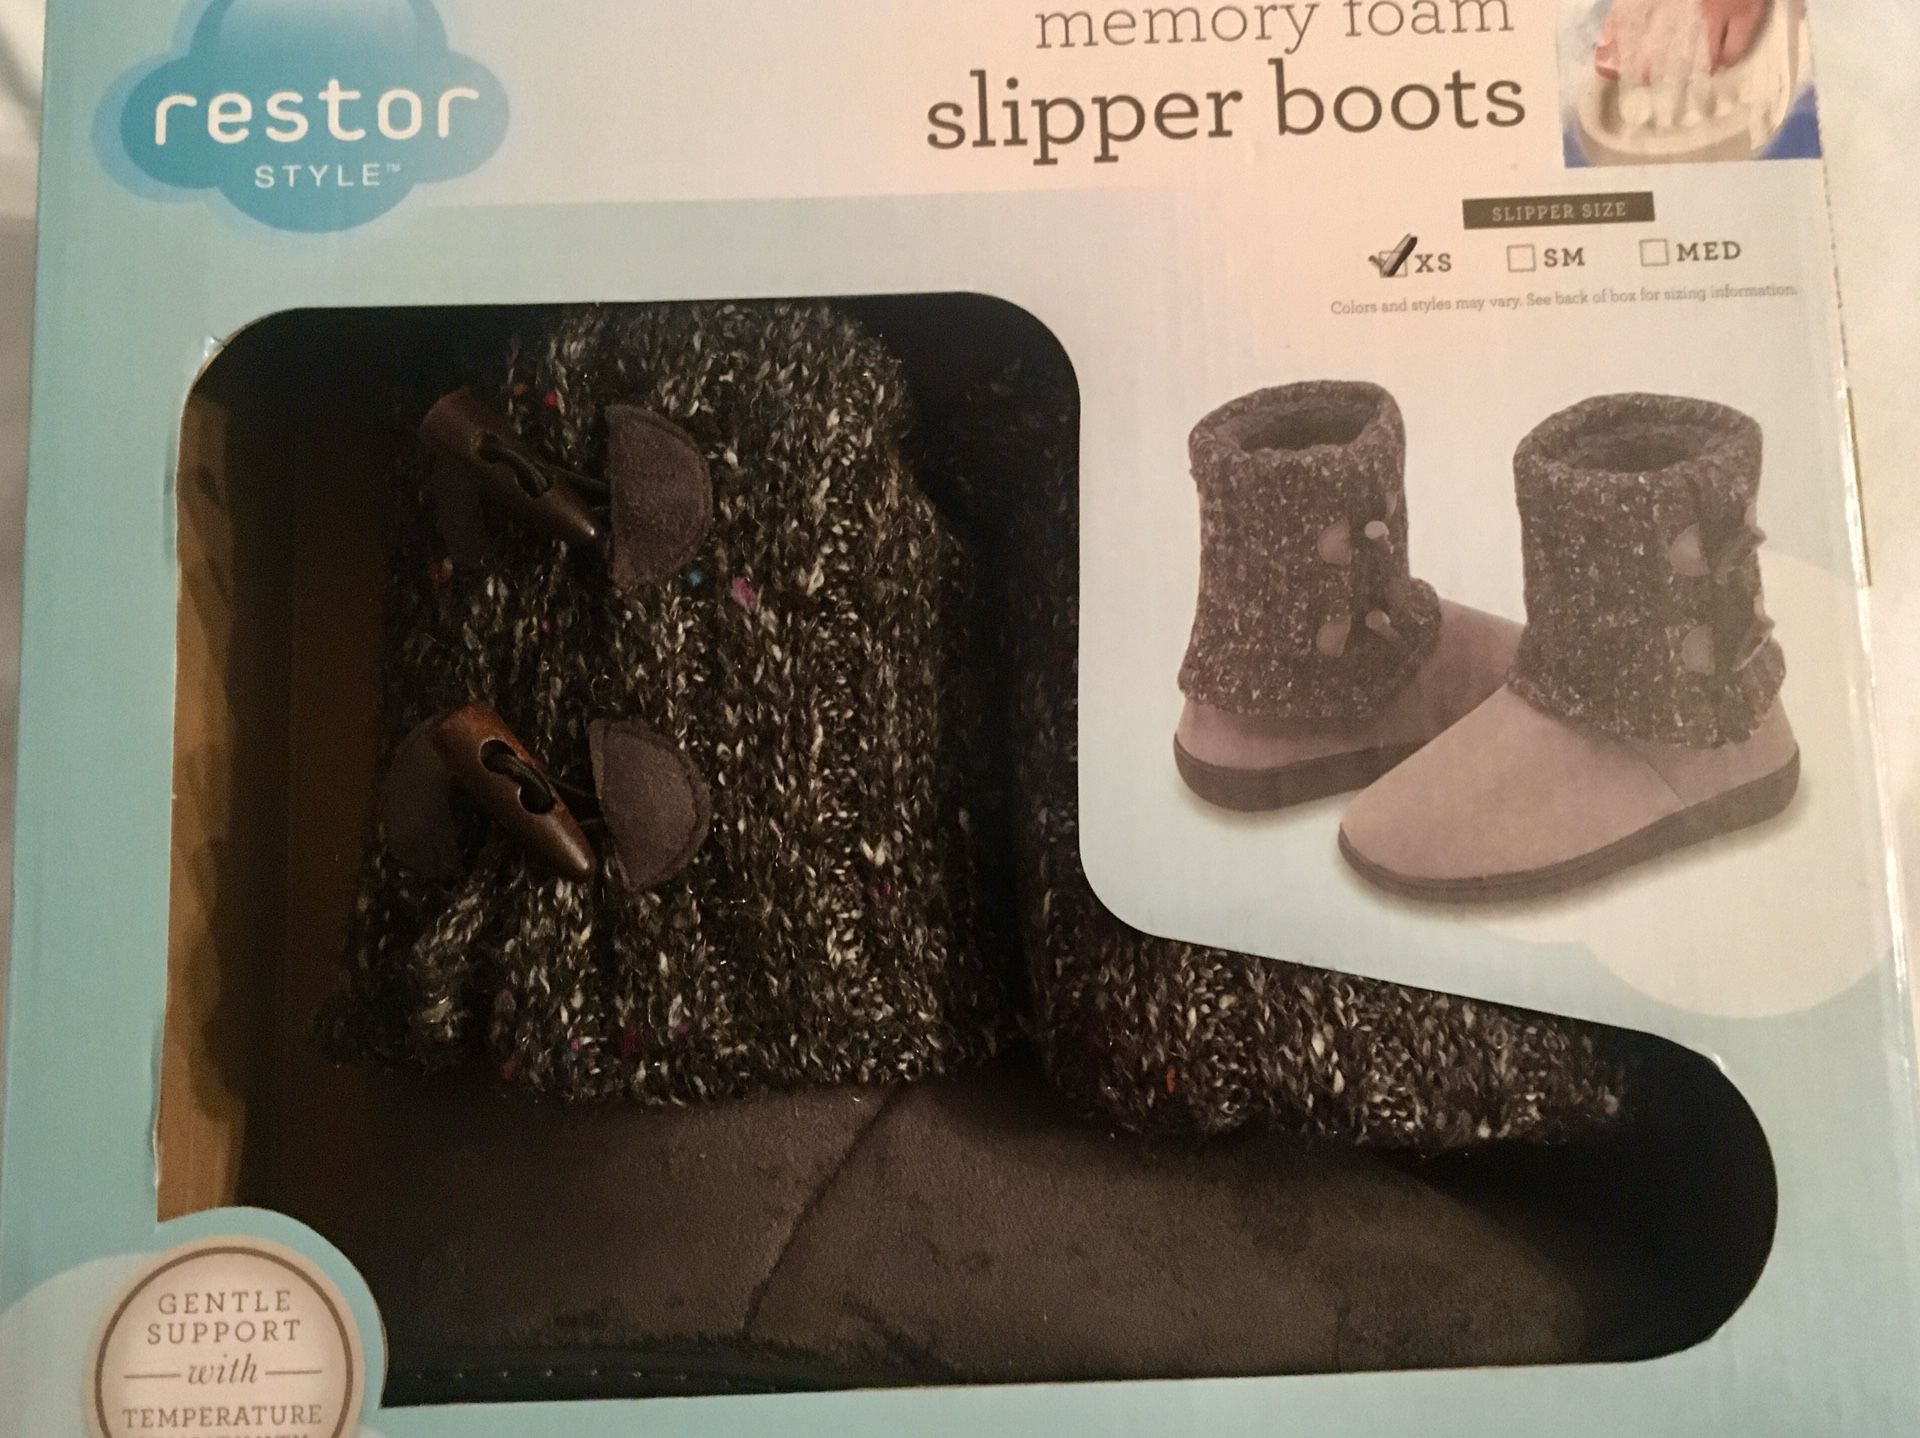 Restor Style Memory Foam Slipper Boots